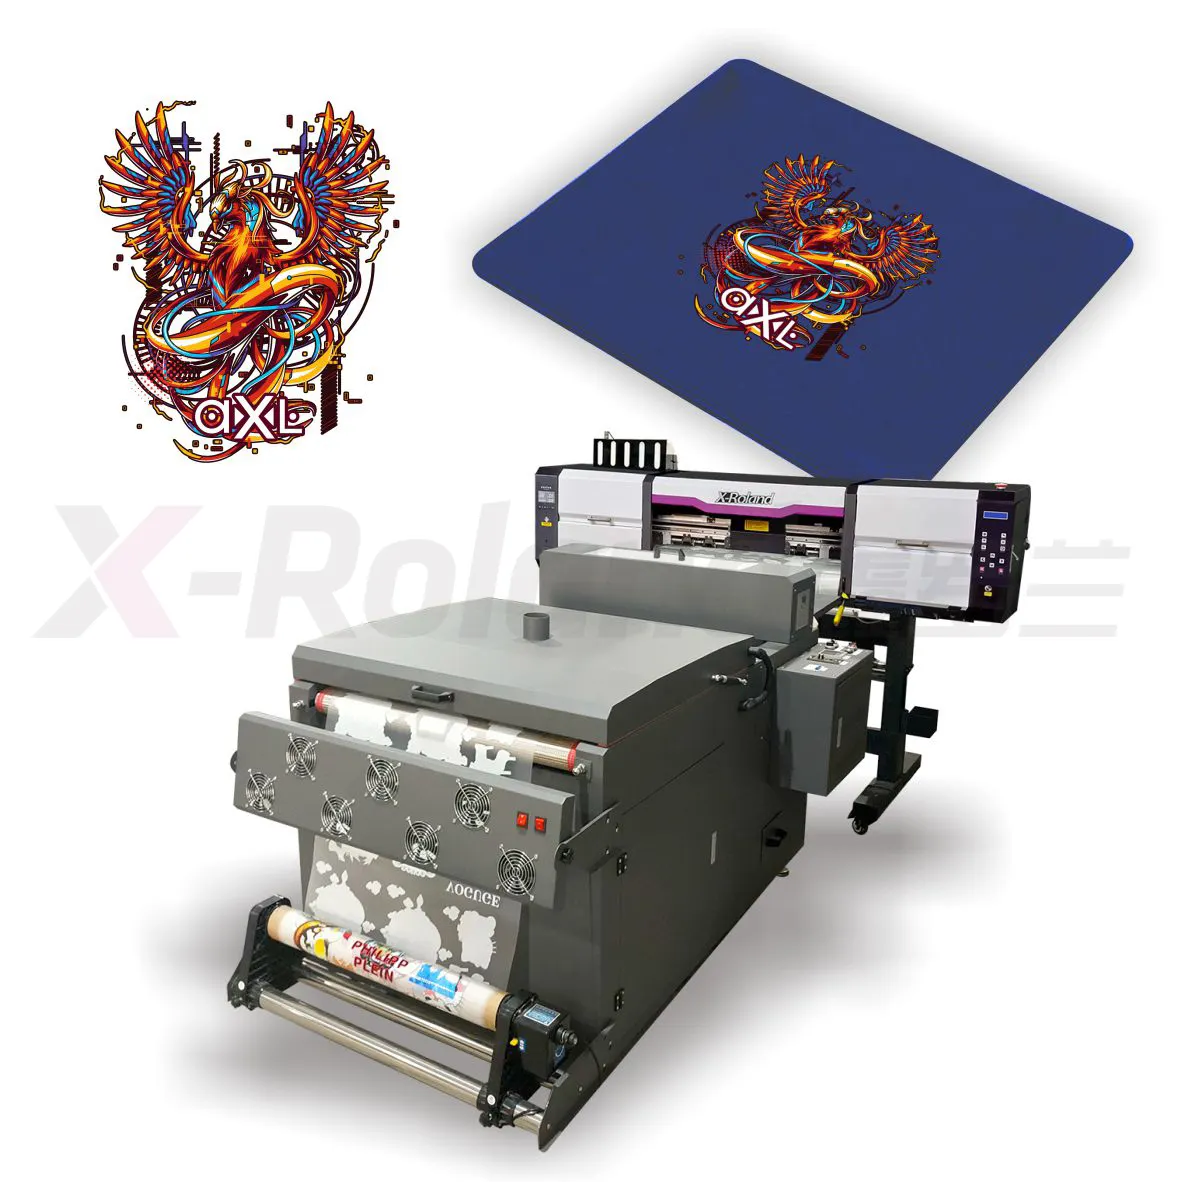 Impressora têxp600, equipamento profissional de impressora dtf a1 i3200 com forno